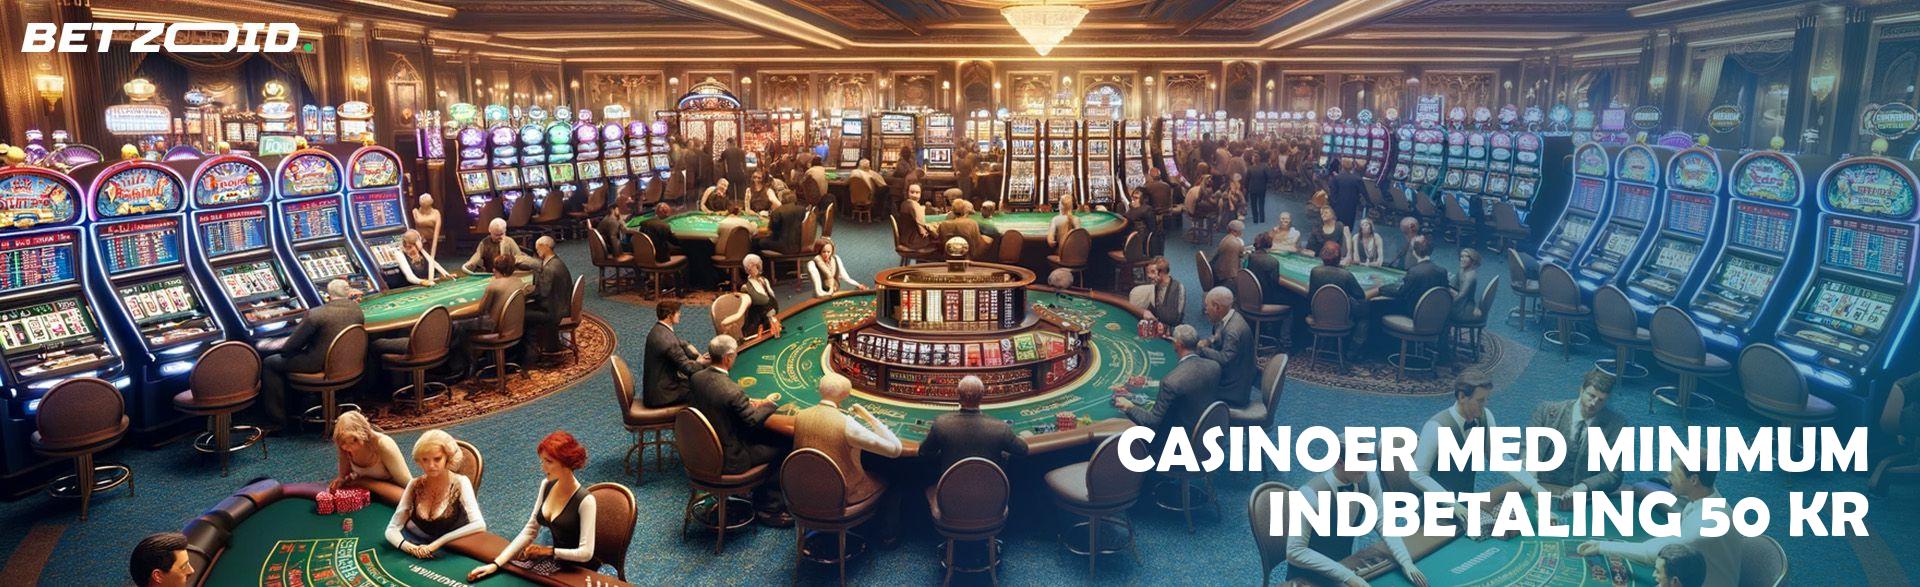 Casinoer Med Minimum Indbetaling 50 Kr.